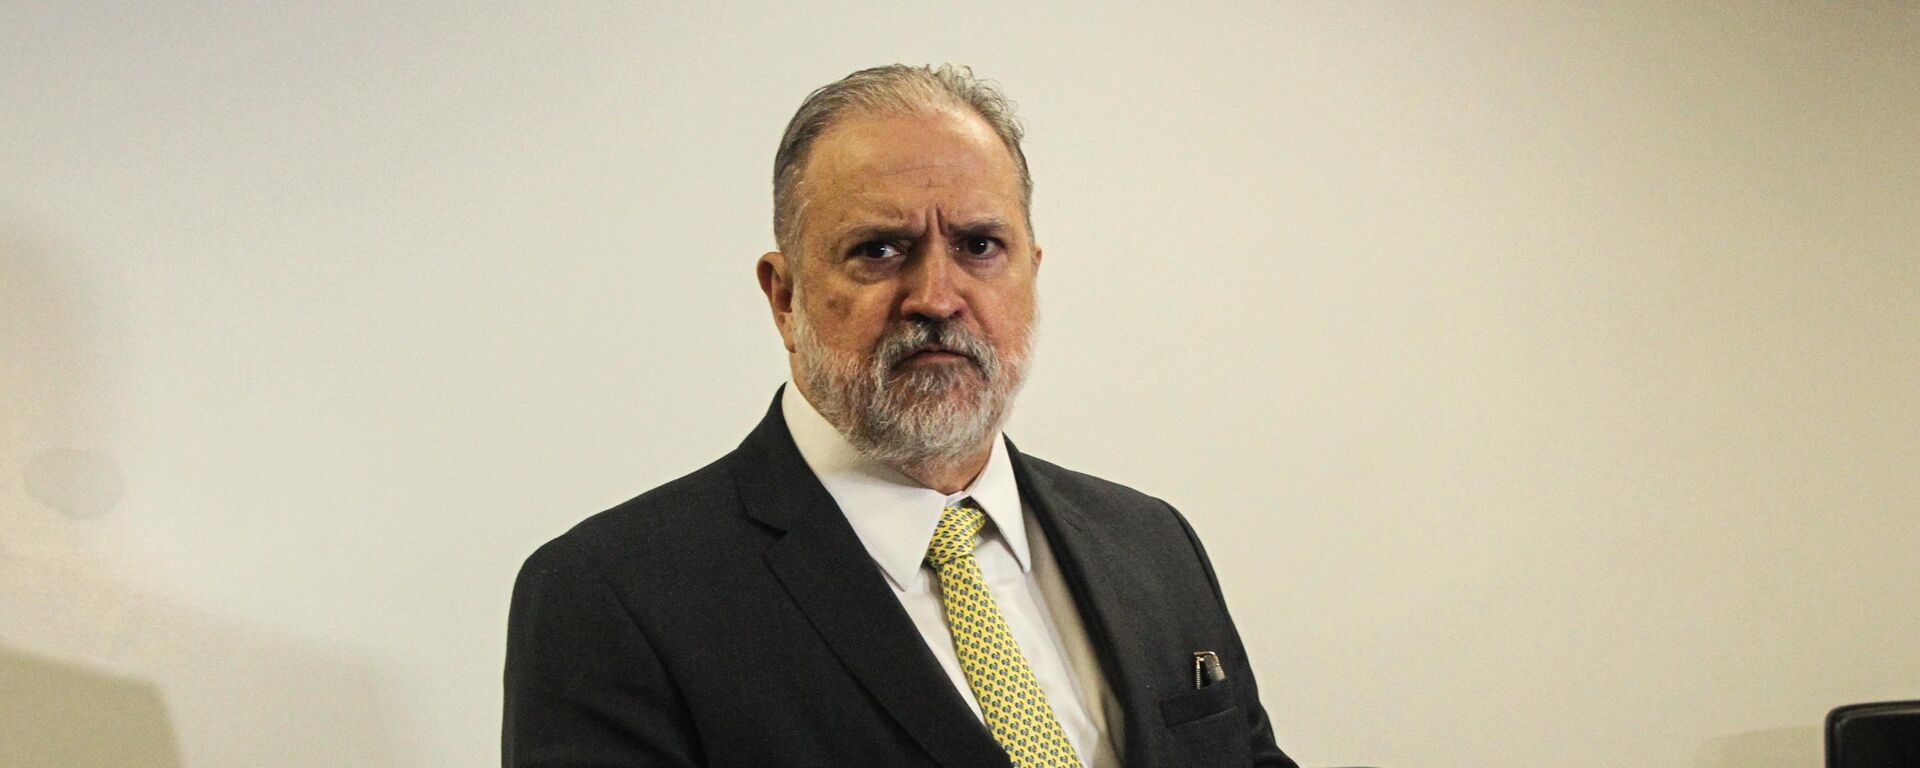 Augusto Aras, procurador-geral da República, participa de reunião com membros do Ministério Público Federal (MPF) sobre violações de direitos indígenas, na sede do MPF no Pará, em Belém, em 6 de maio de 2022 - Sputnik Brasil, 1920, 23.05.2022